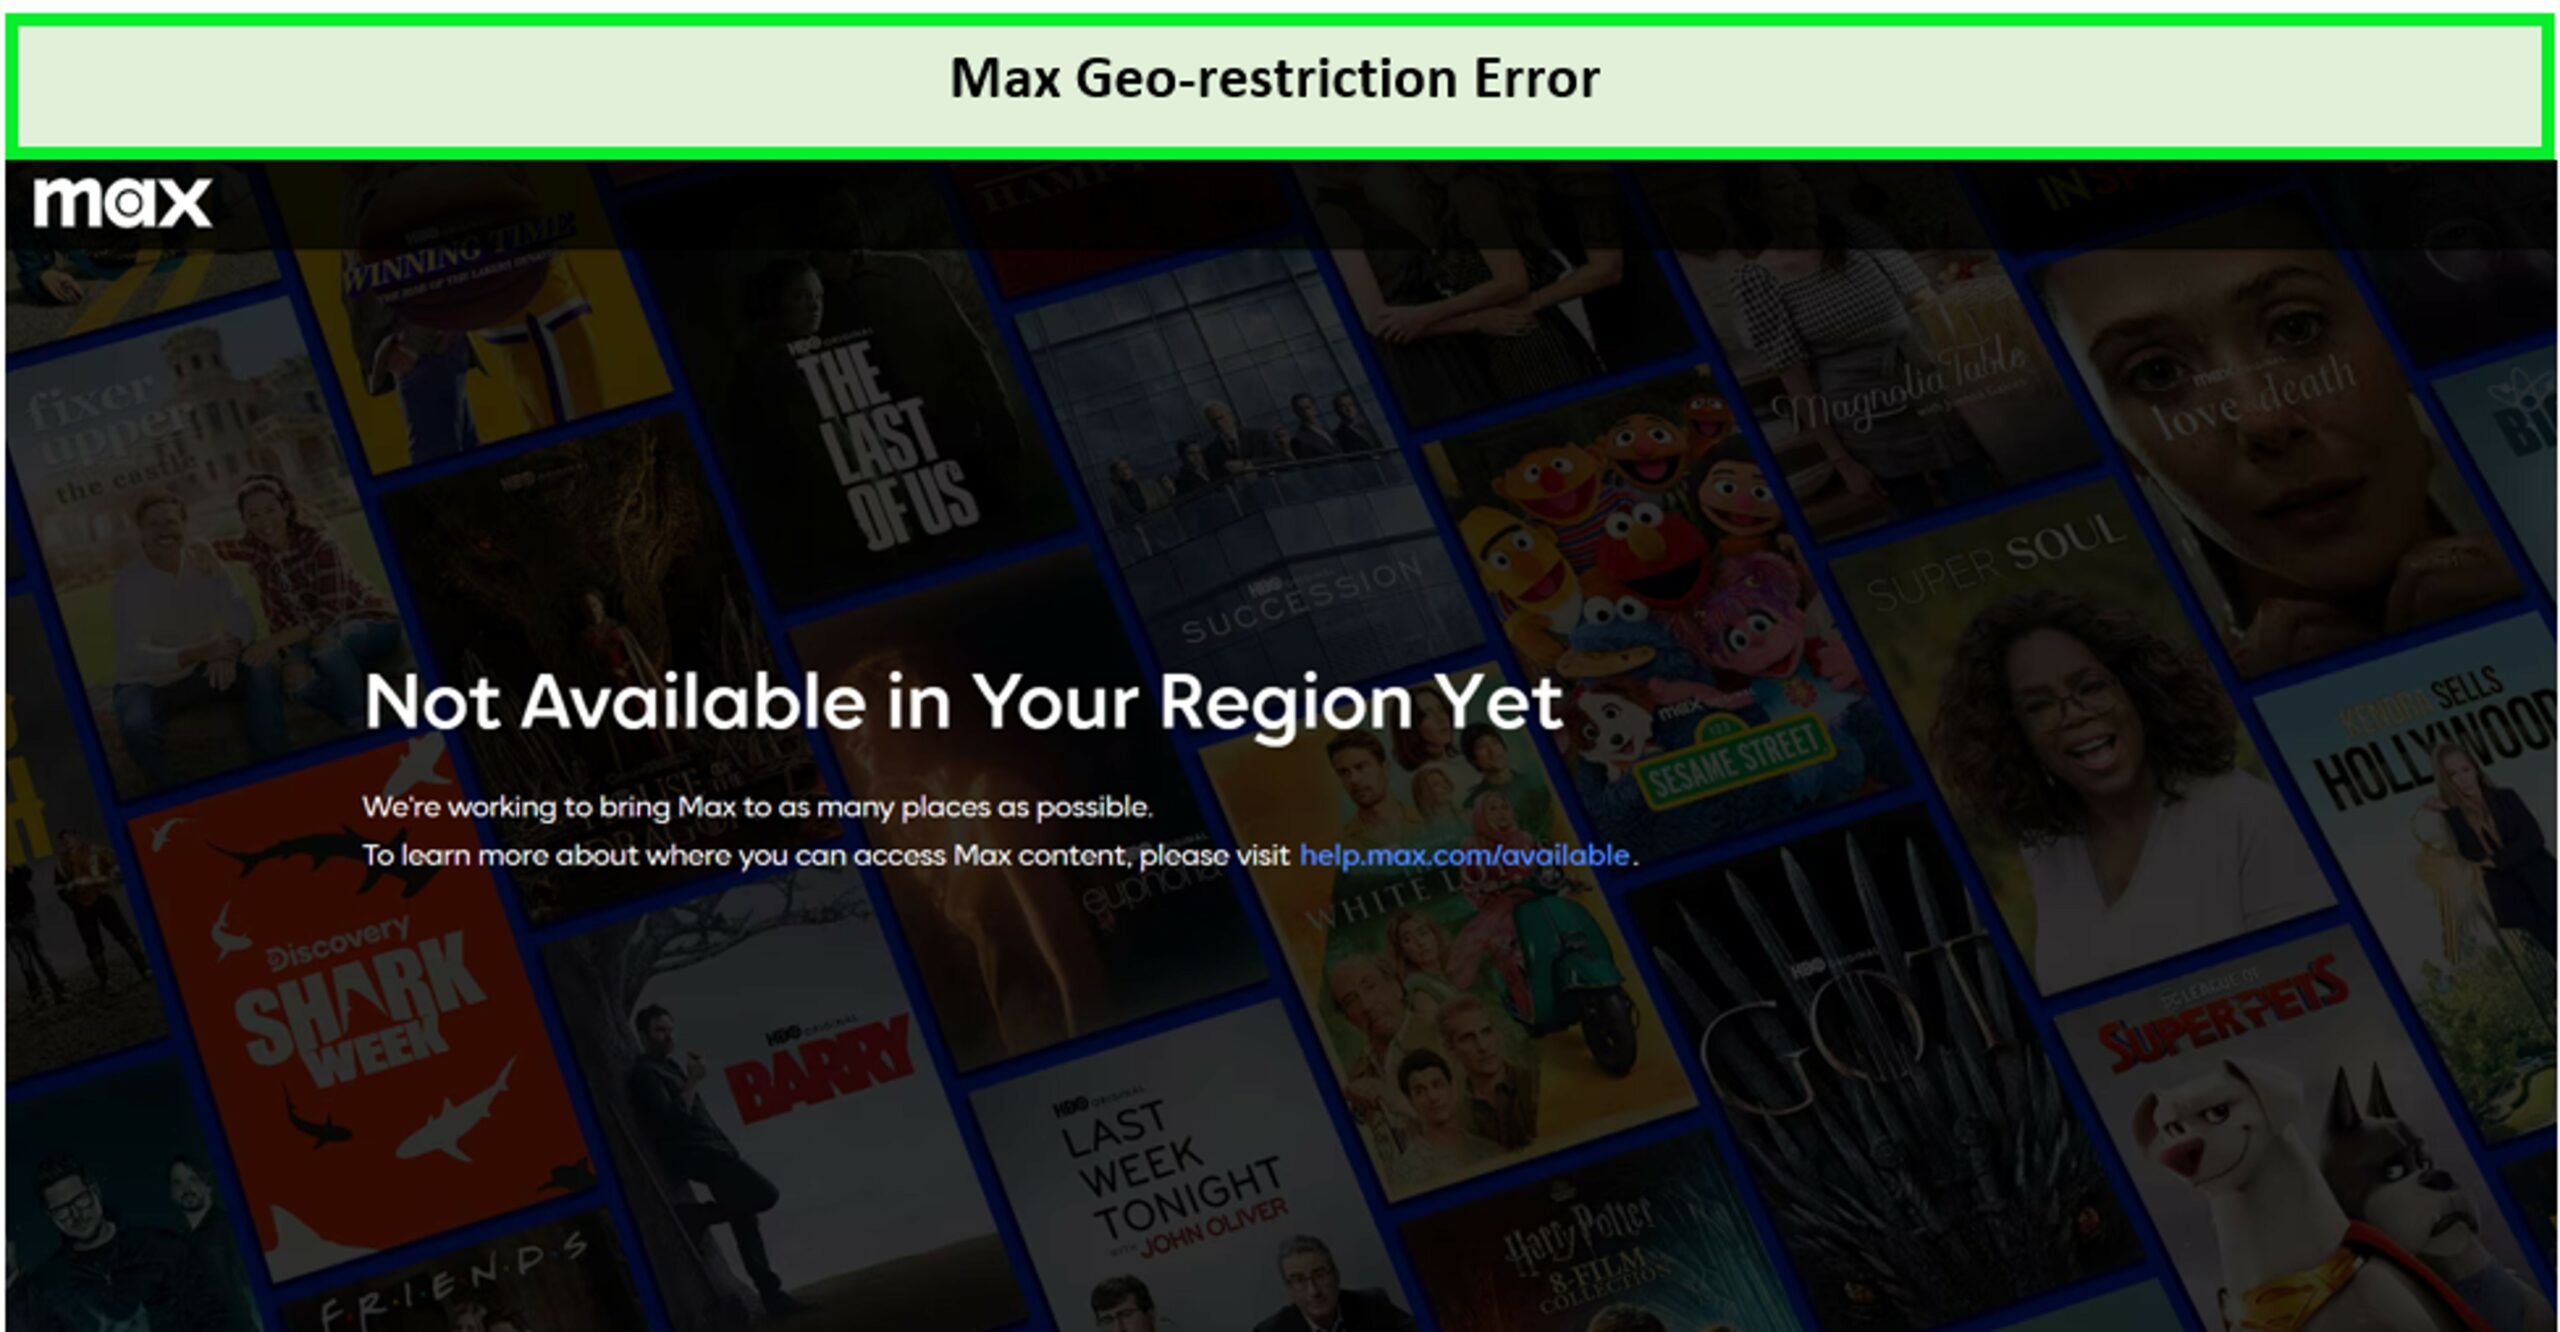 HBO-Max-geo-restriction-error